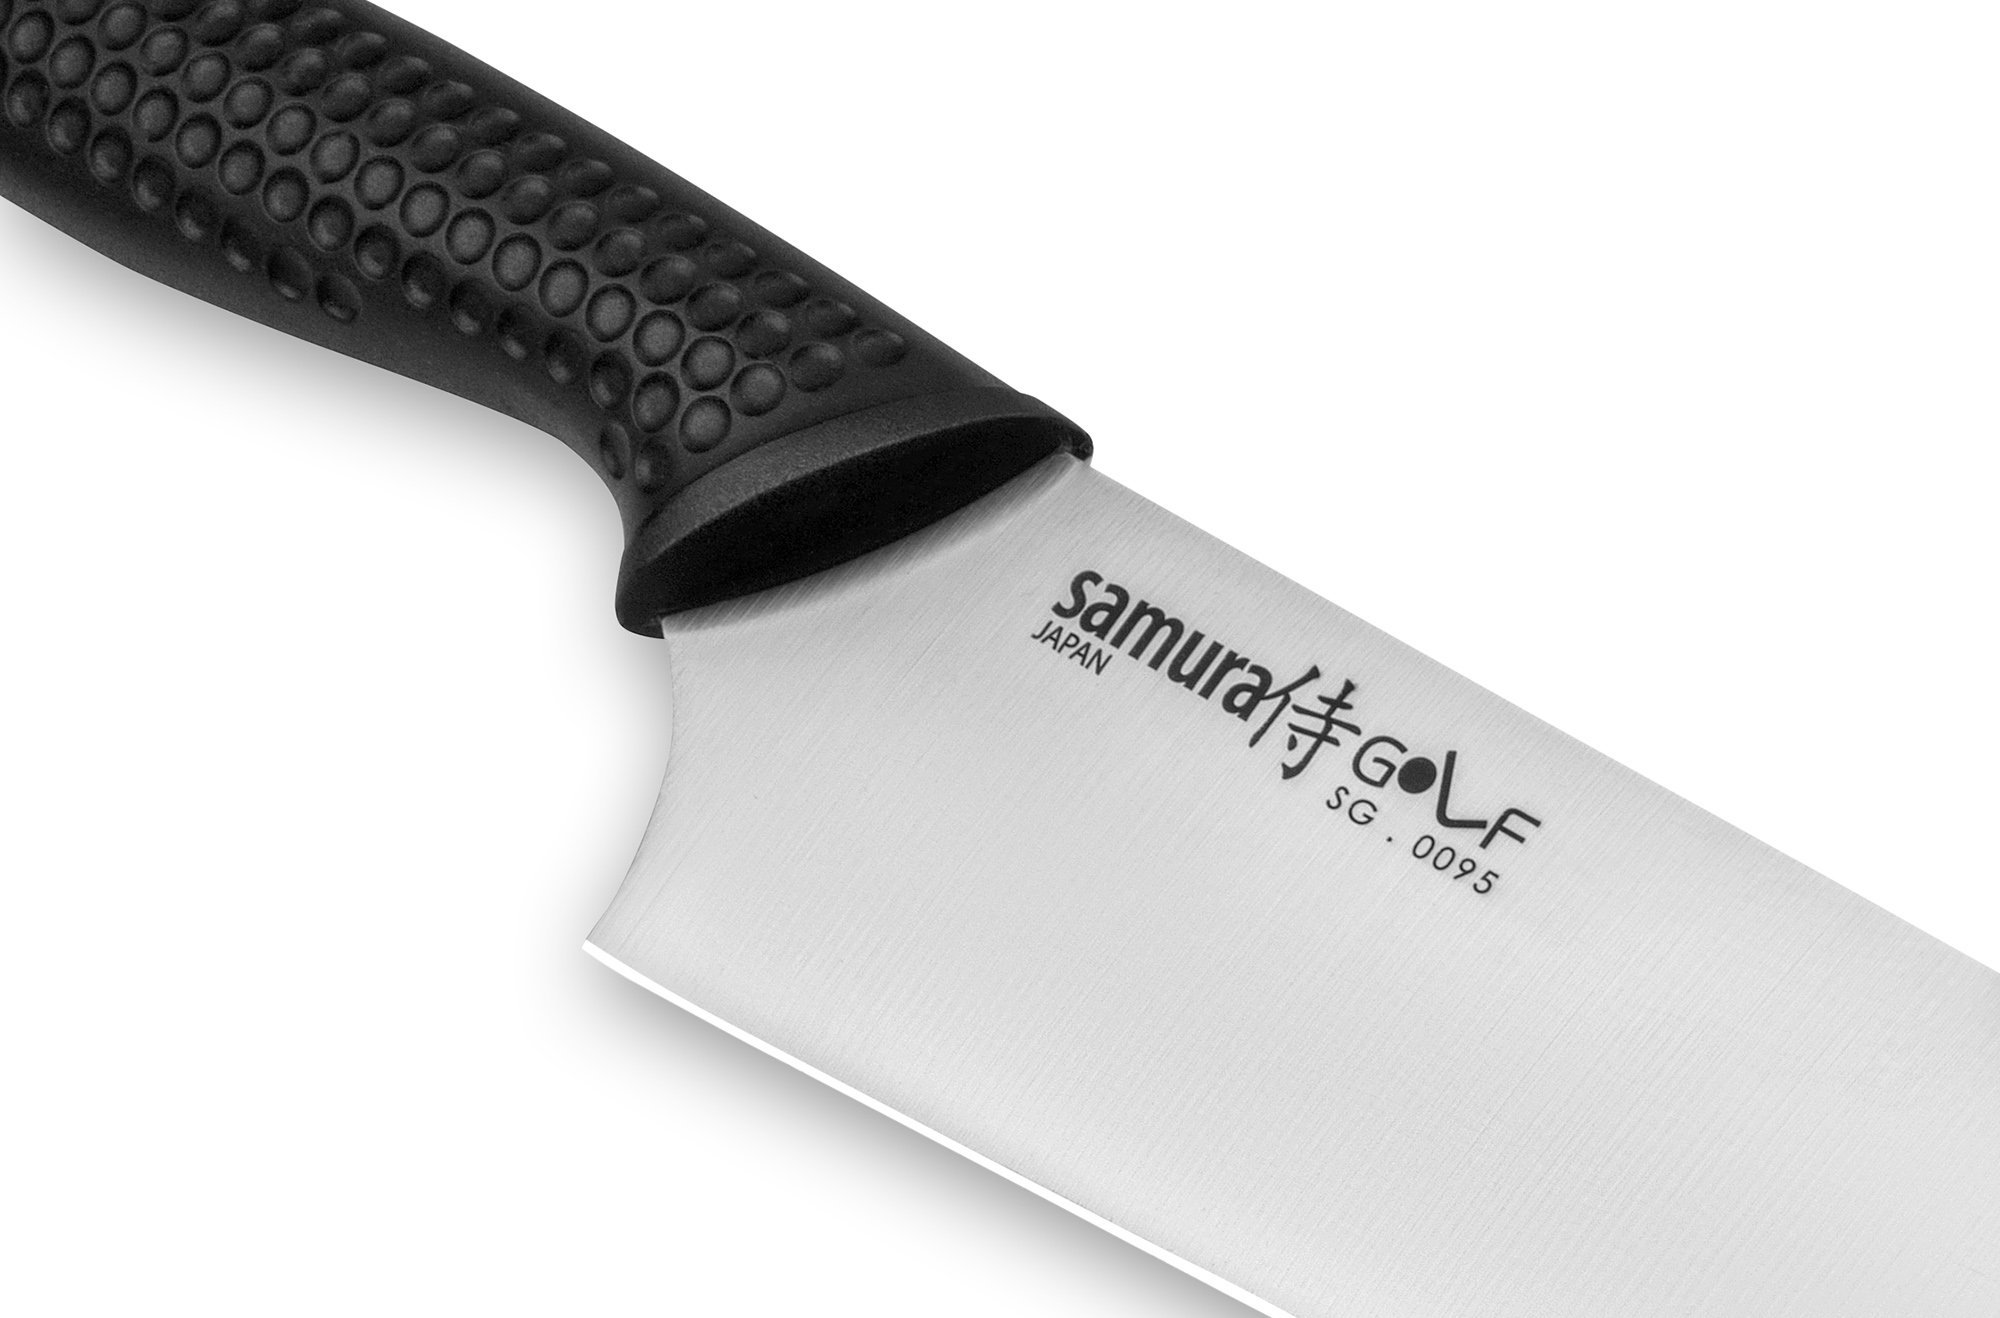 Нож Сантоку Samura GOLF - SG-0095, сталь AUS-8, рукоять полипропилен, 180 мм - фото 4